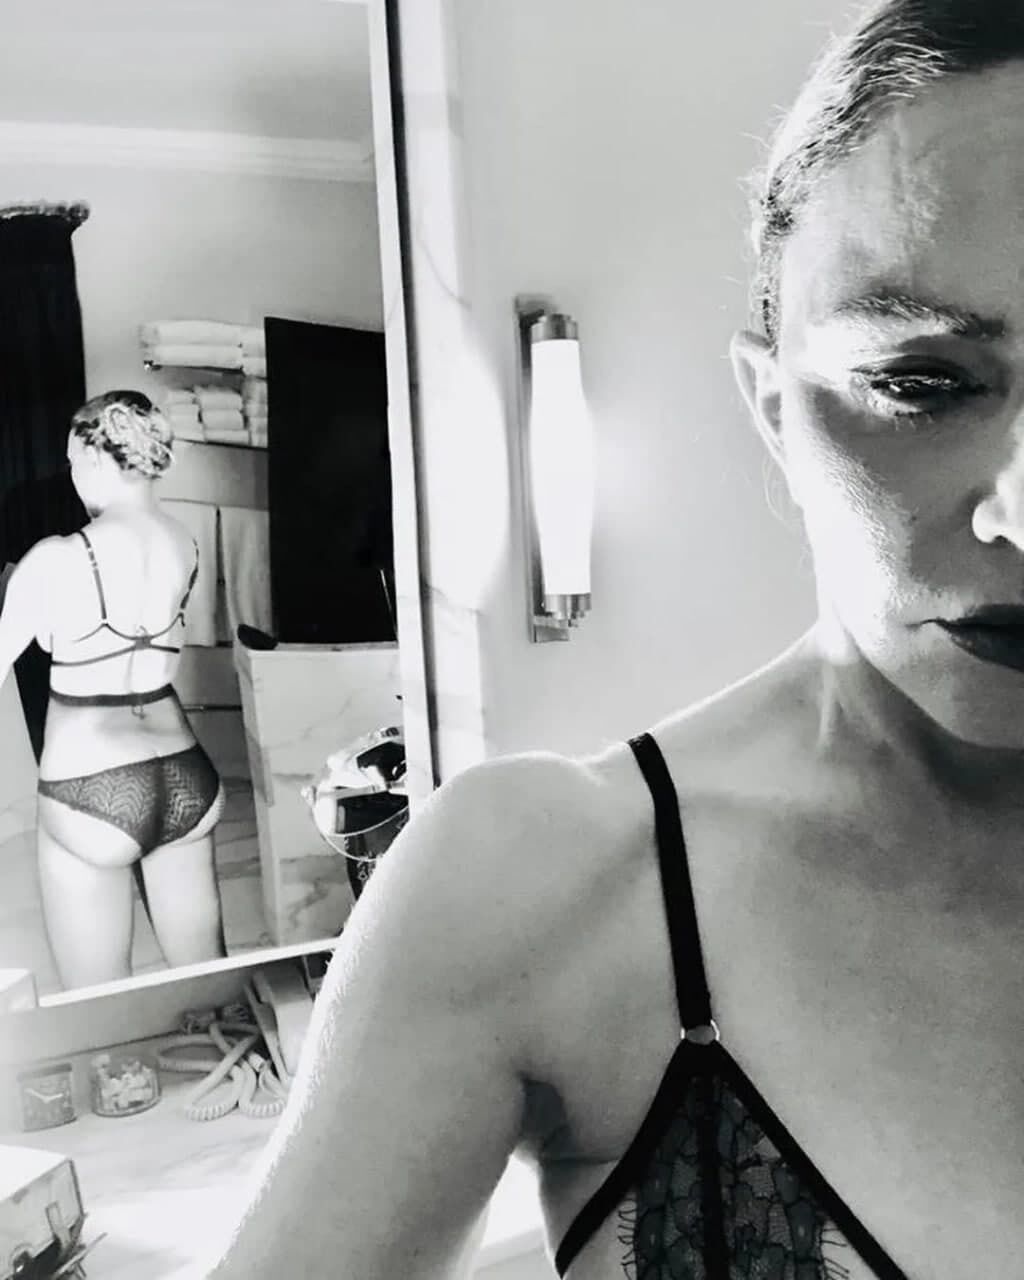 Также Мадонна сфотографировала себя сзади в зеркале